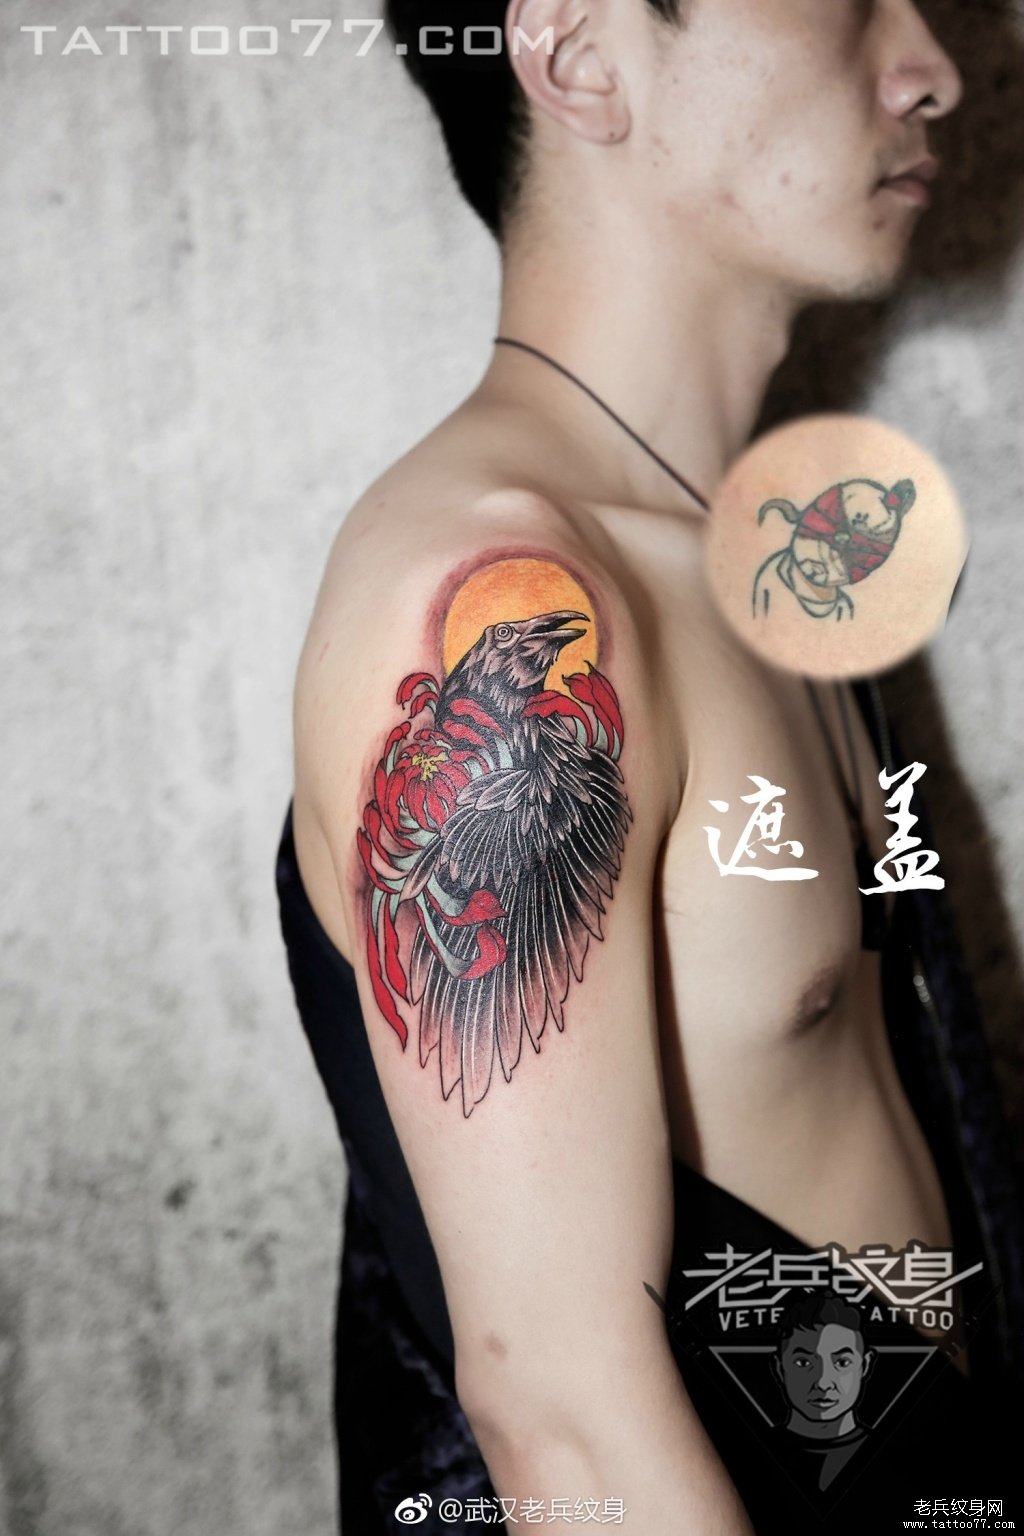 大臂乌鸦纹身图案作品遮盖旧纹身